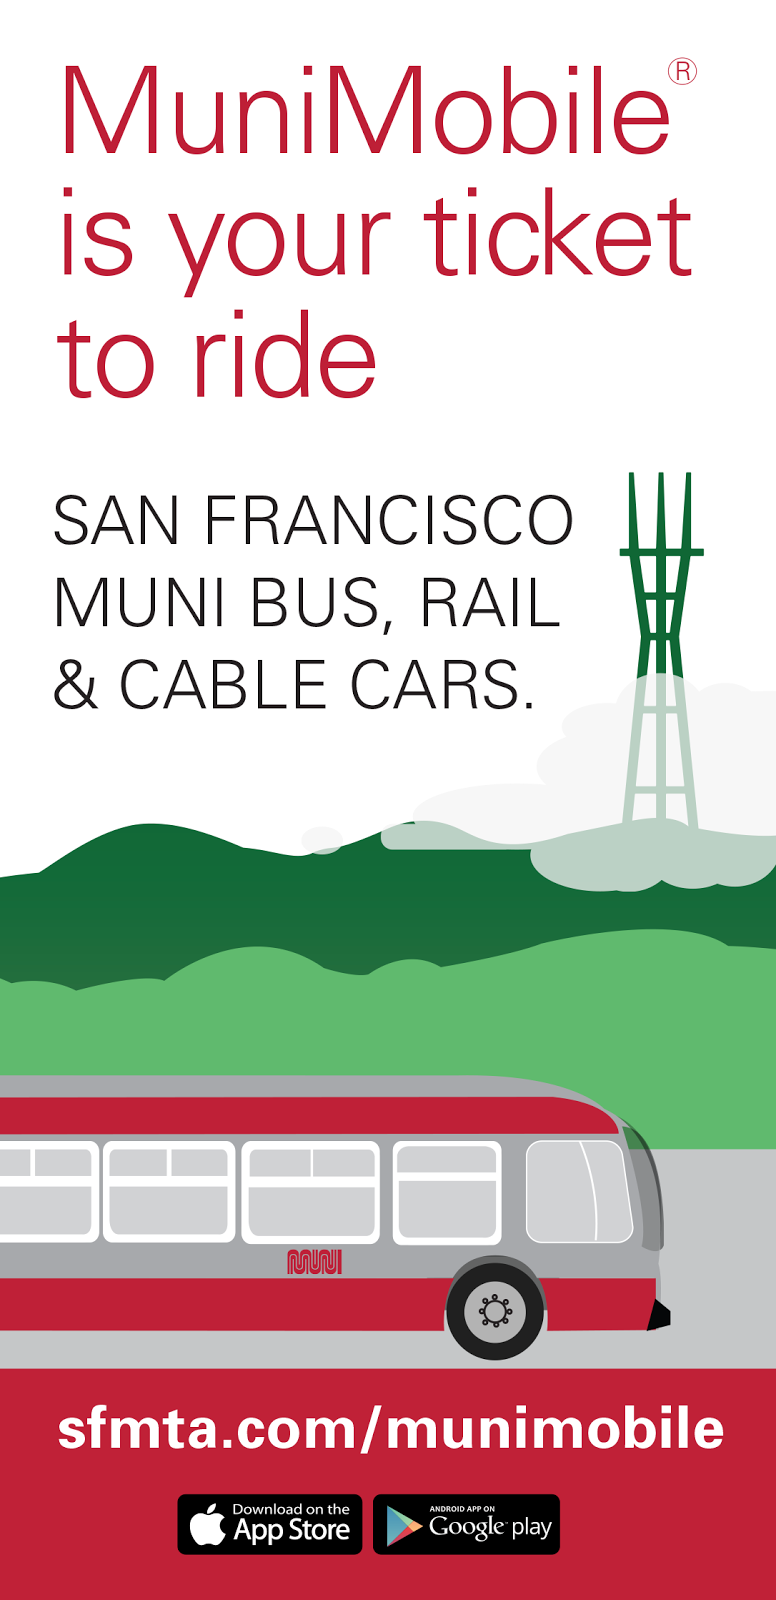 MuniMobile est votre billet pour emprunter les bus, trains et téléphériques Muni de San Francisco. sfmta.com/munimobile